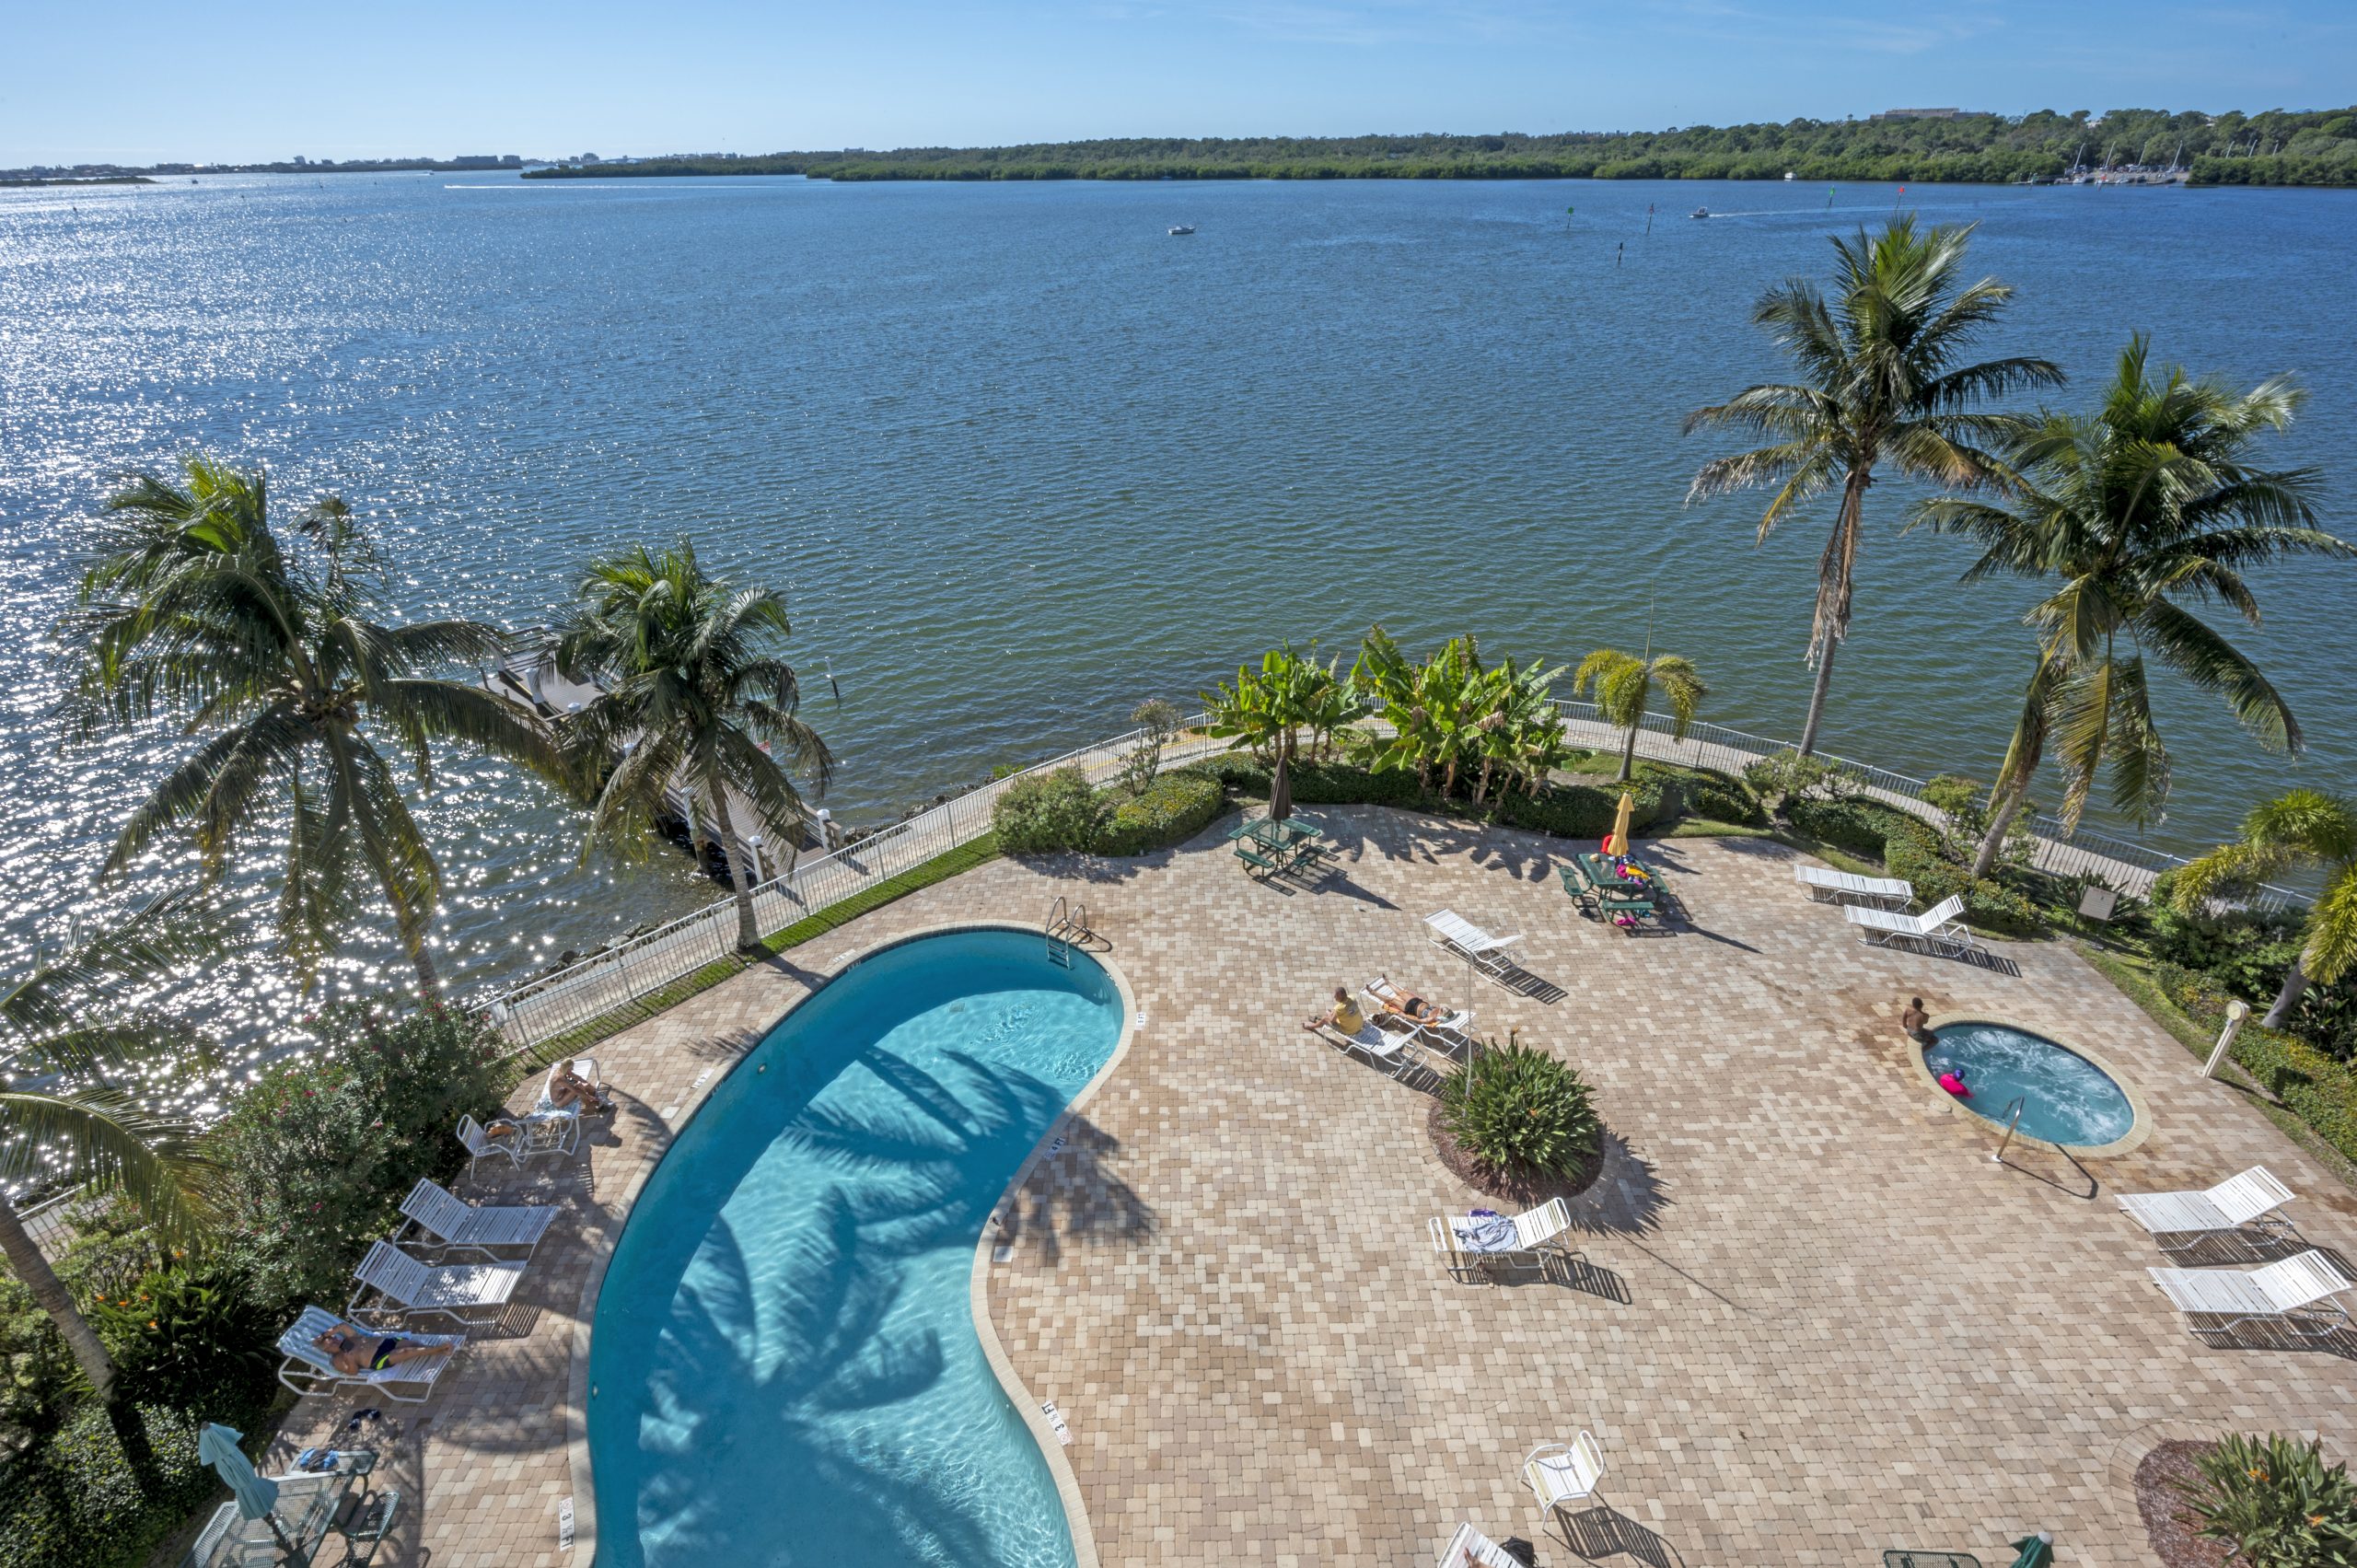 Waterfront vacation rentals, Boca Ciega Resort pool area